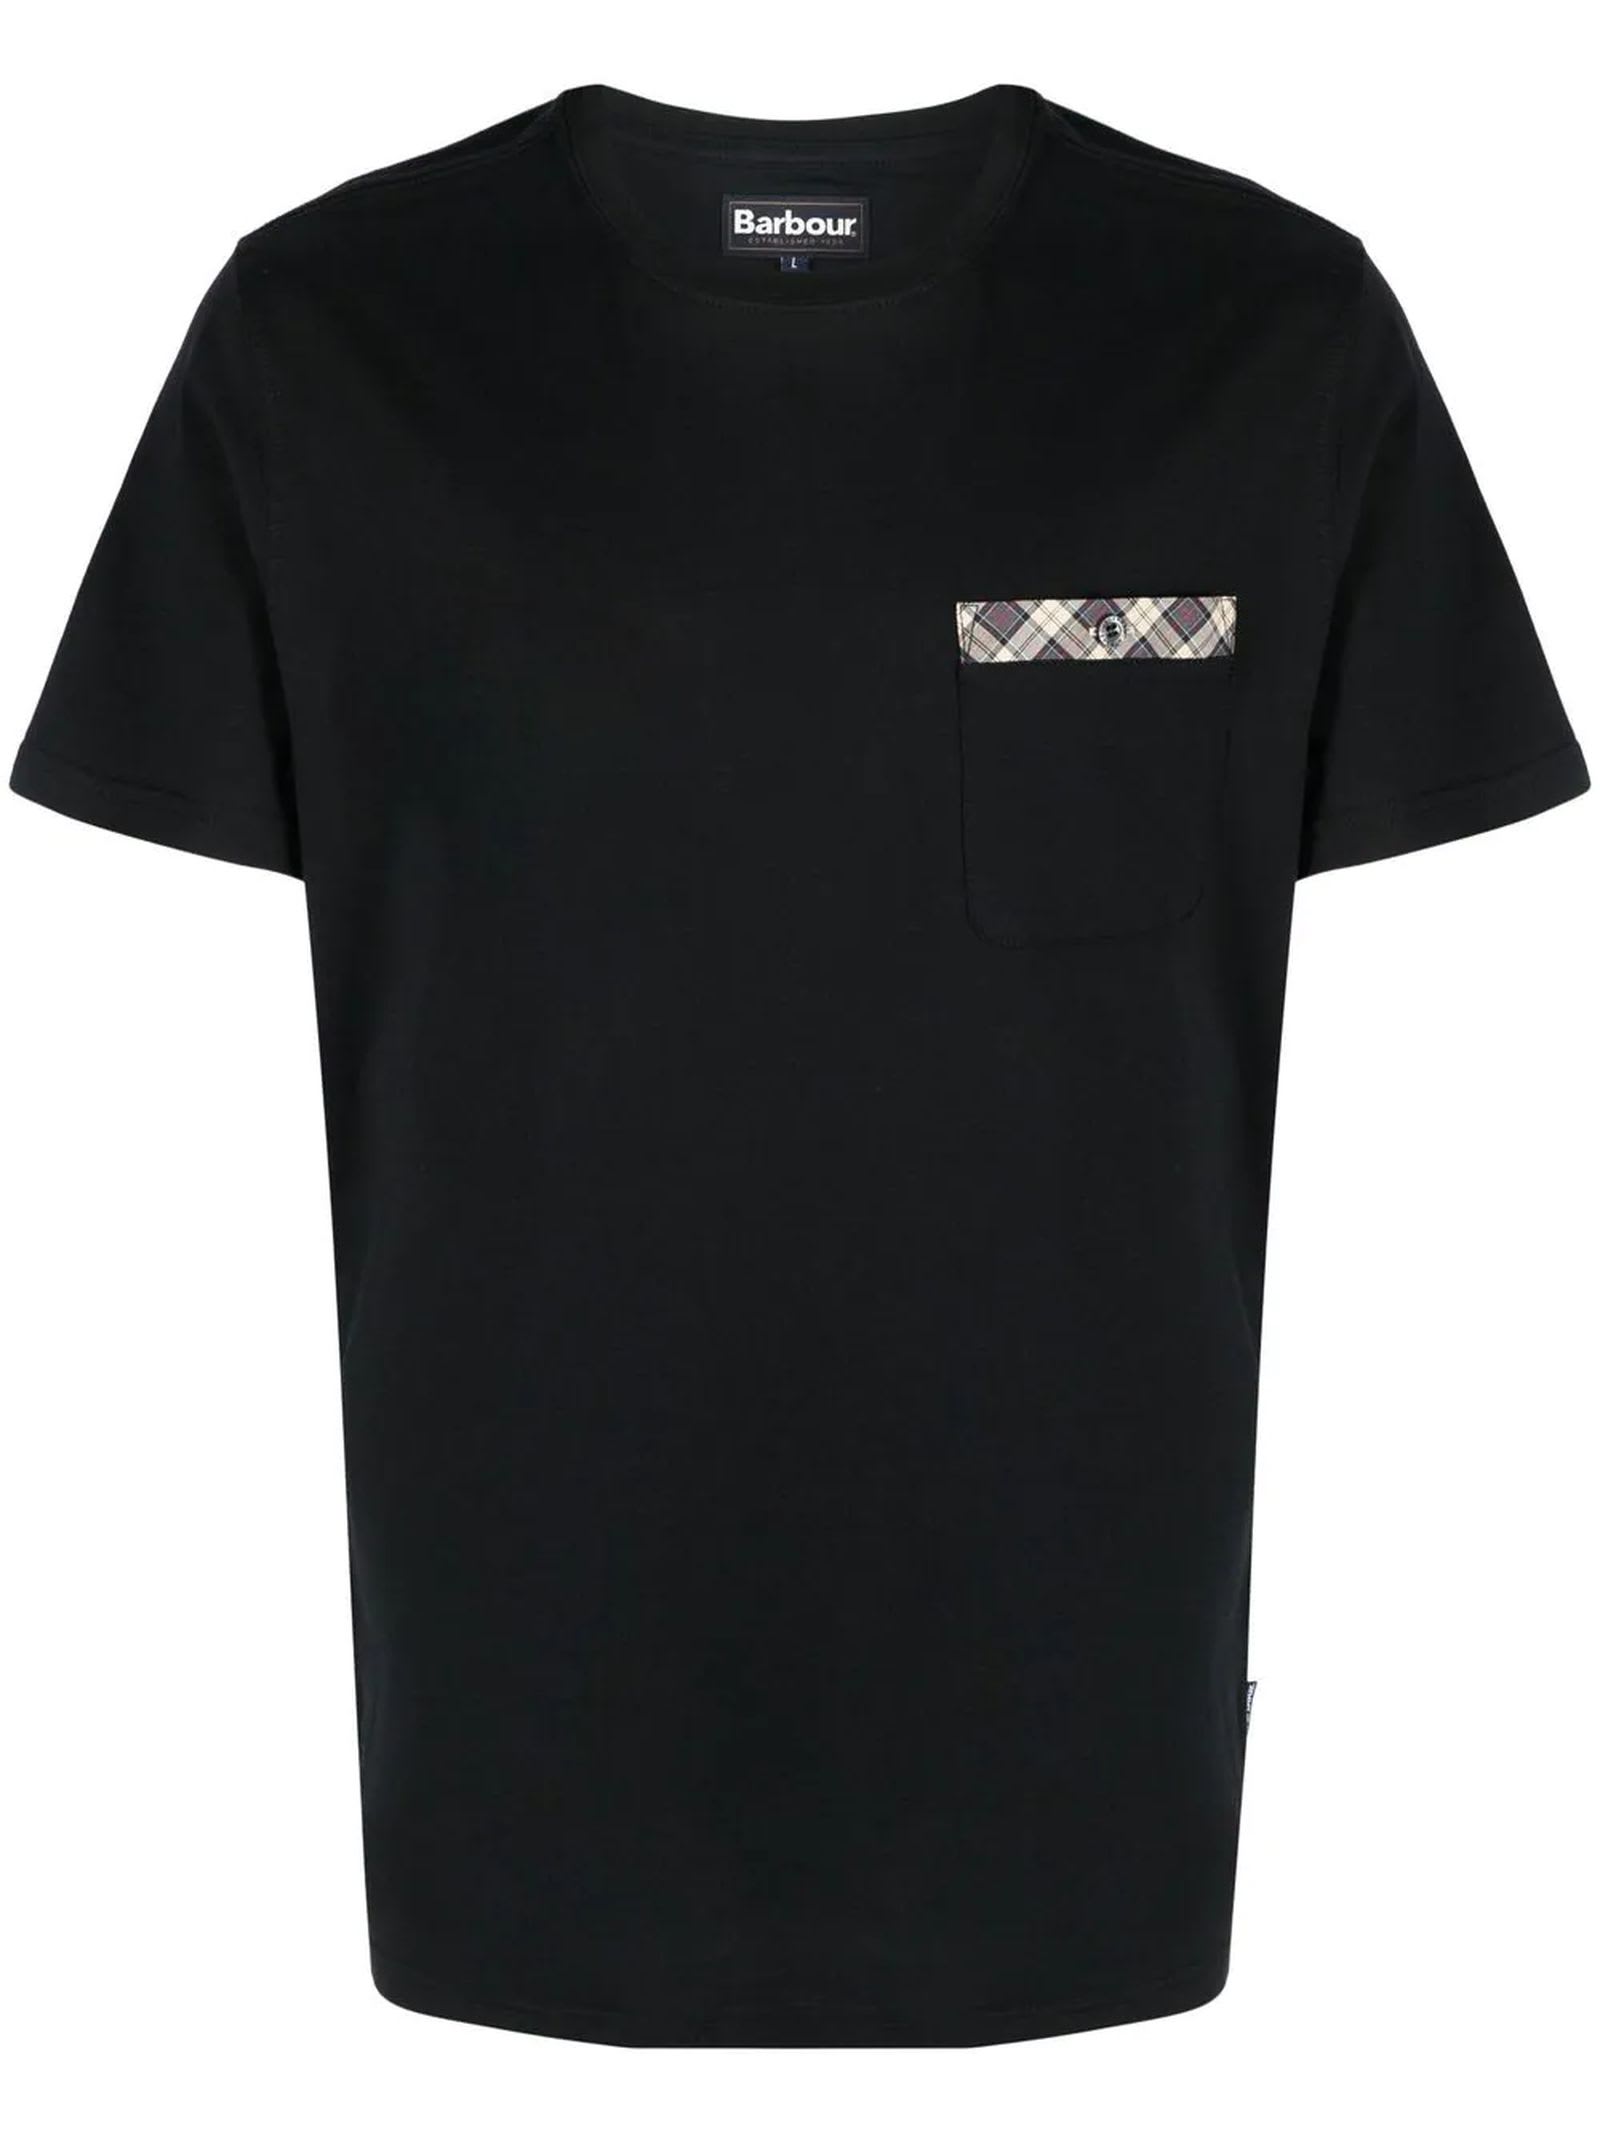 Barbour Black Cotton T-shirt